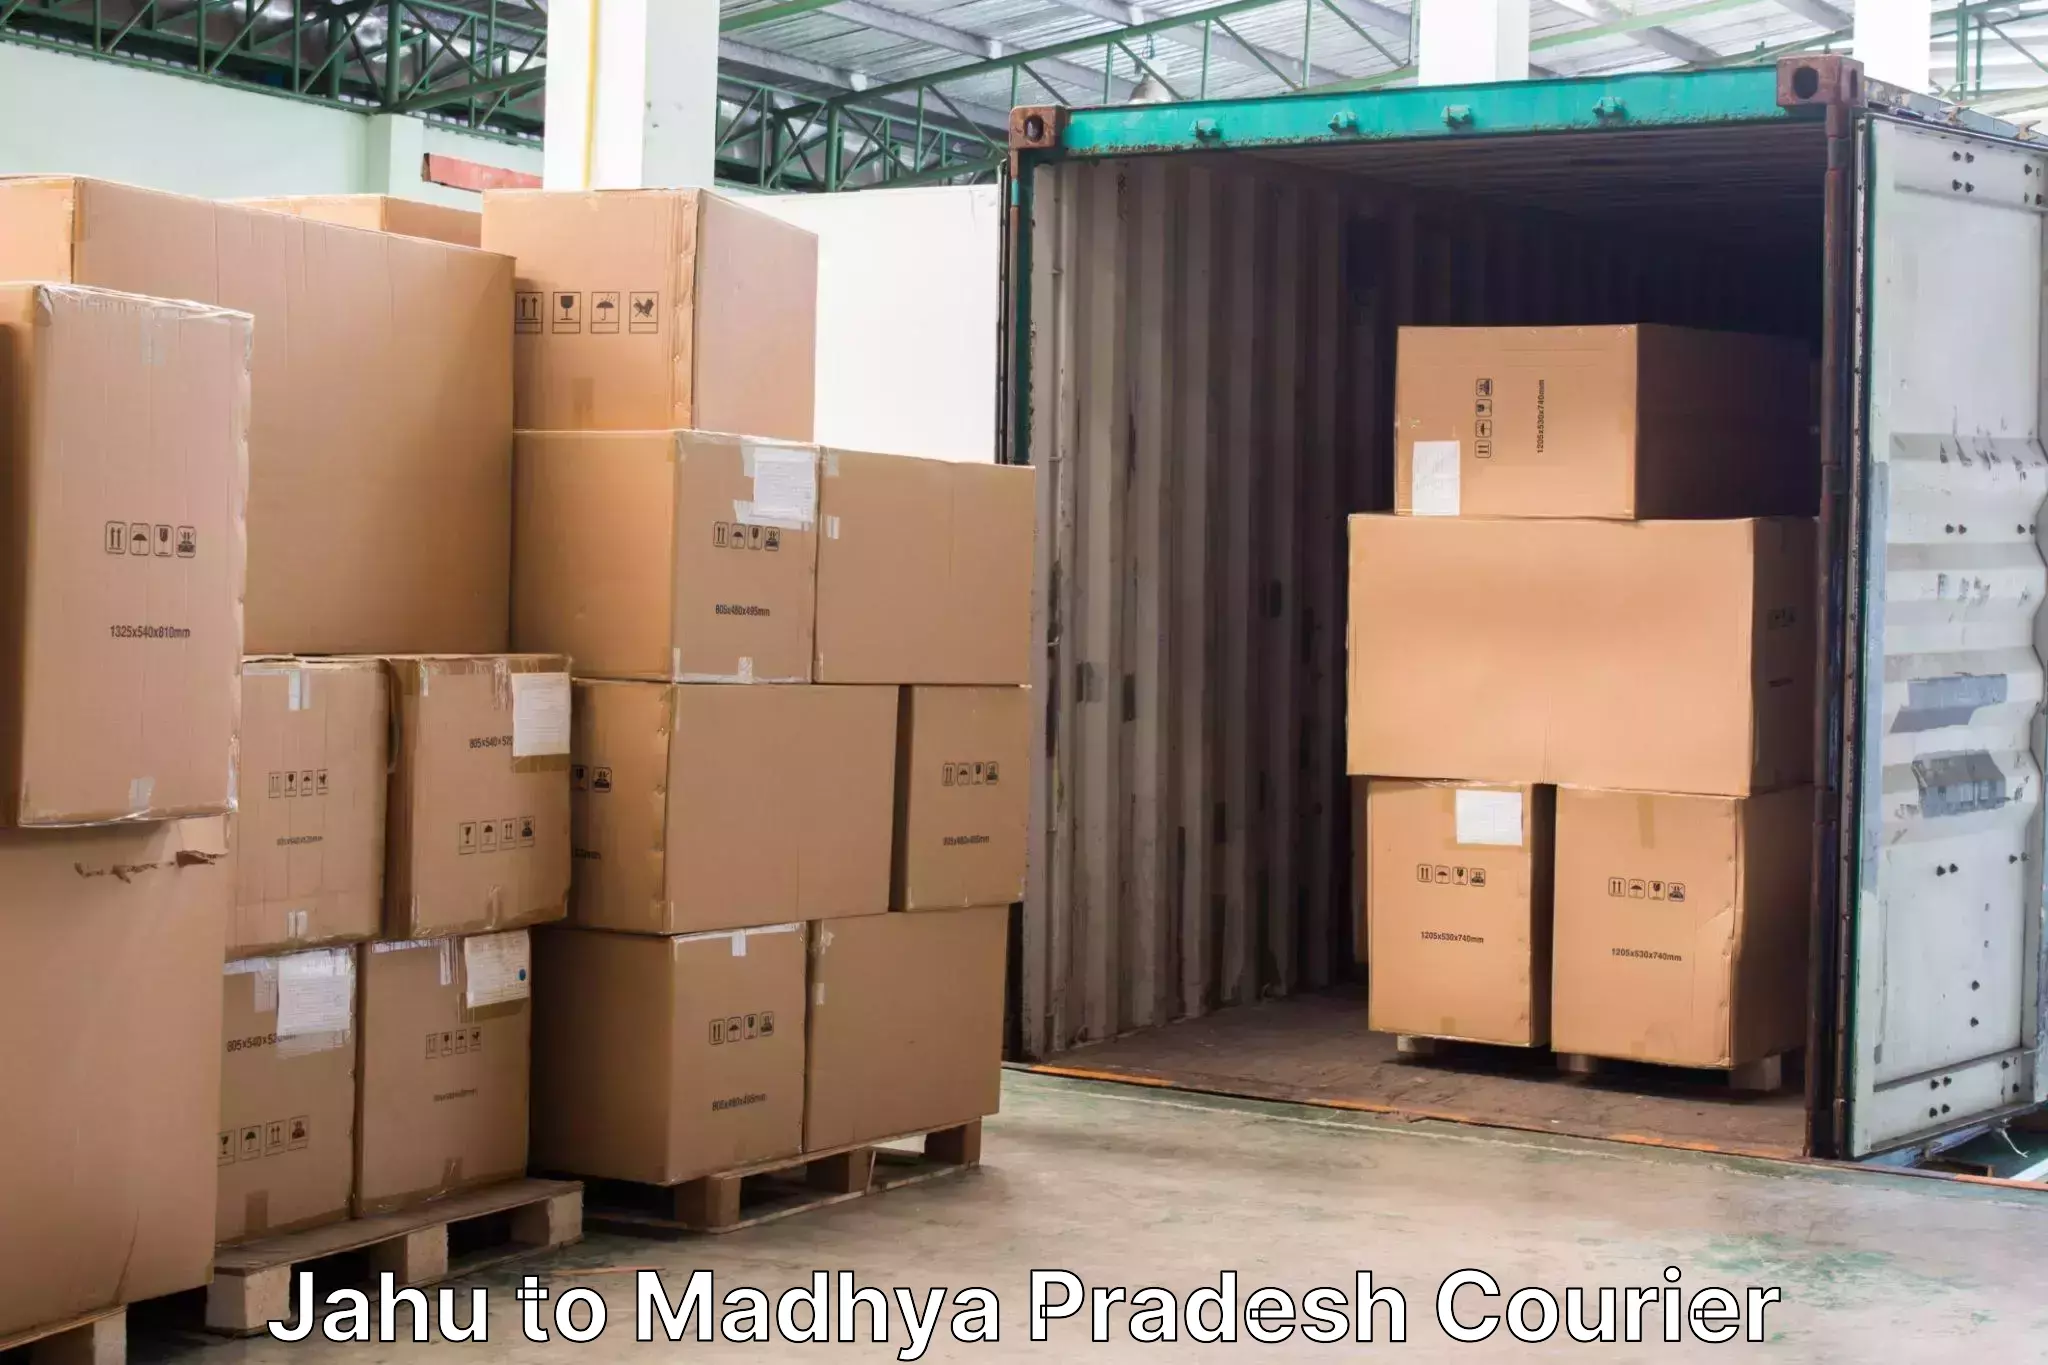 Baggage delivery estimate Jahu to Seoni Malwa